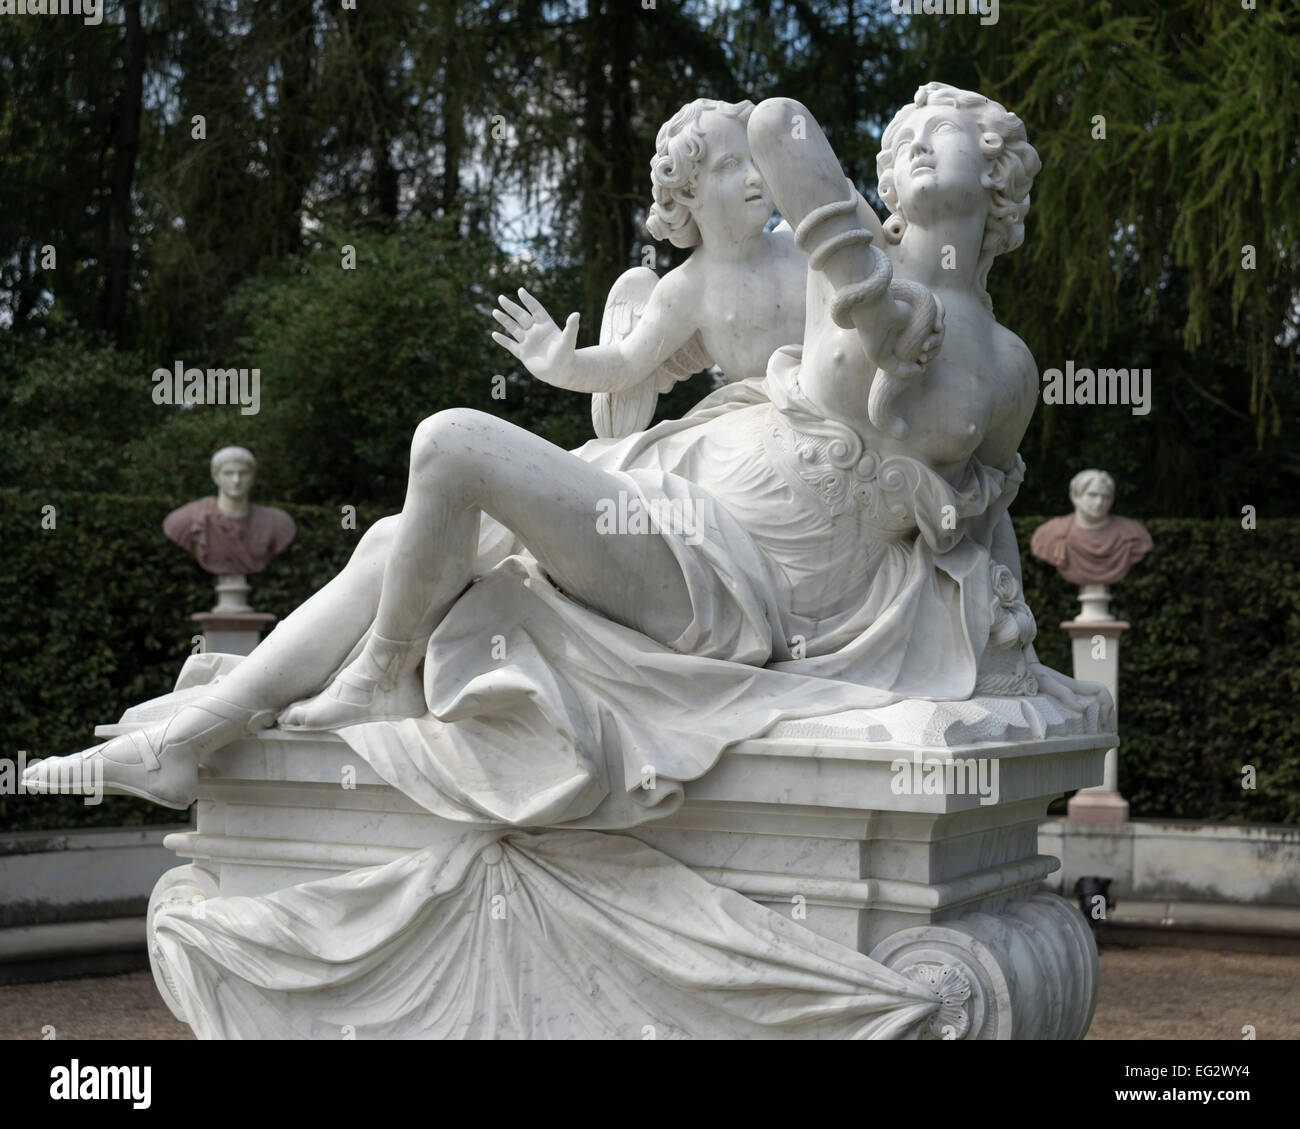 Sculpture group , Sanssouci Park, Potsdam, Germany, Europe. Stock Photo